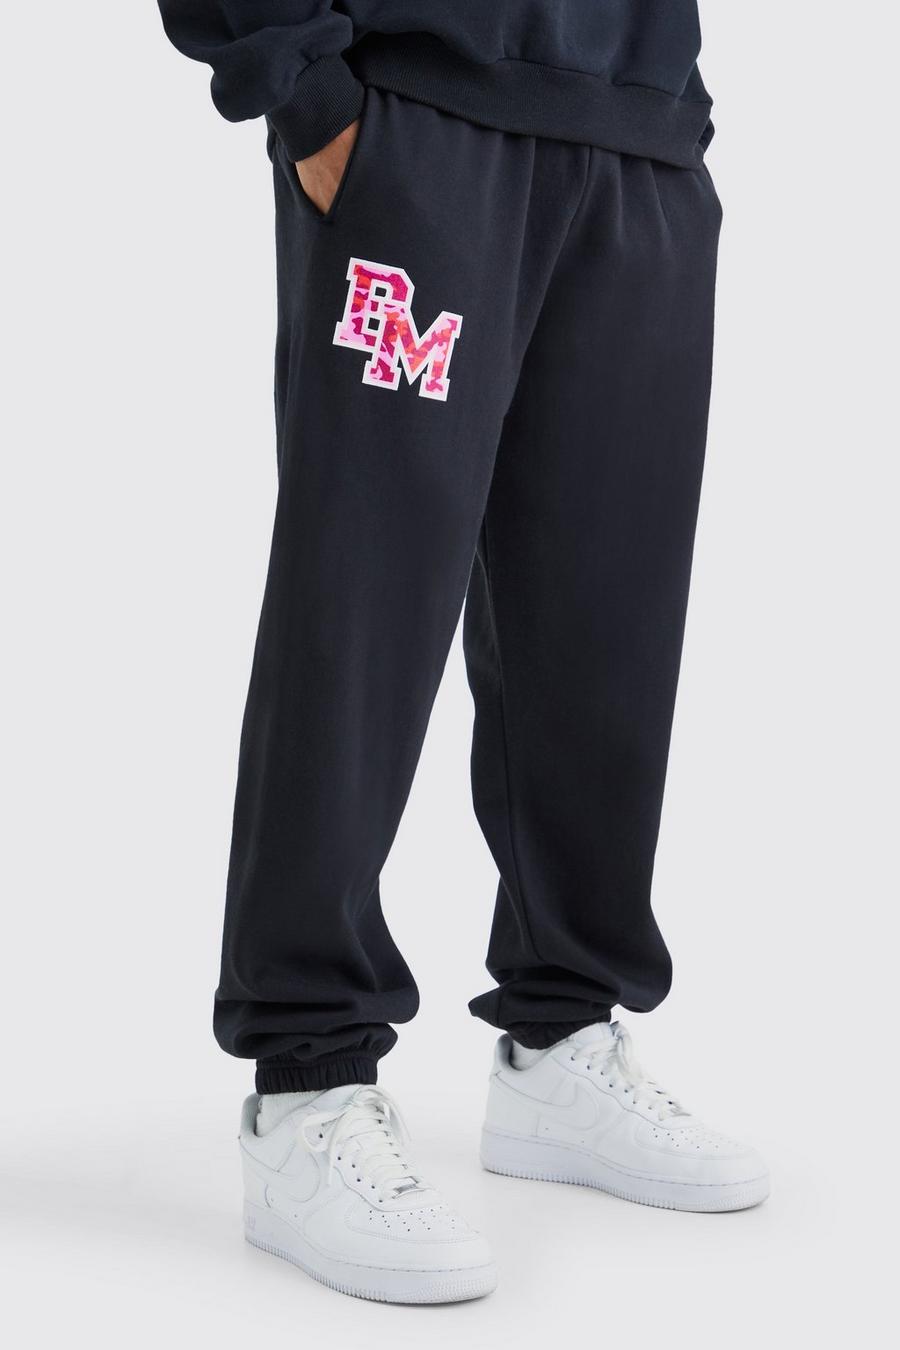 Pantalón deportivo oversize con estampado gráfico universitario BM, Black